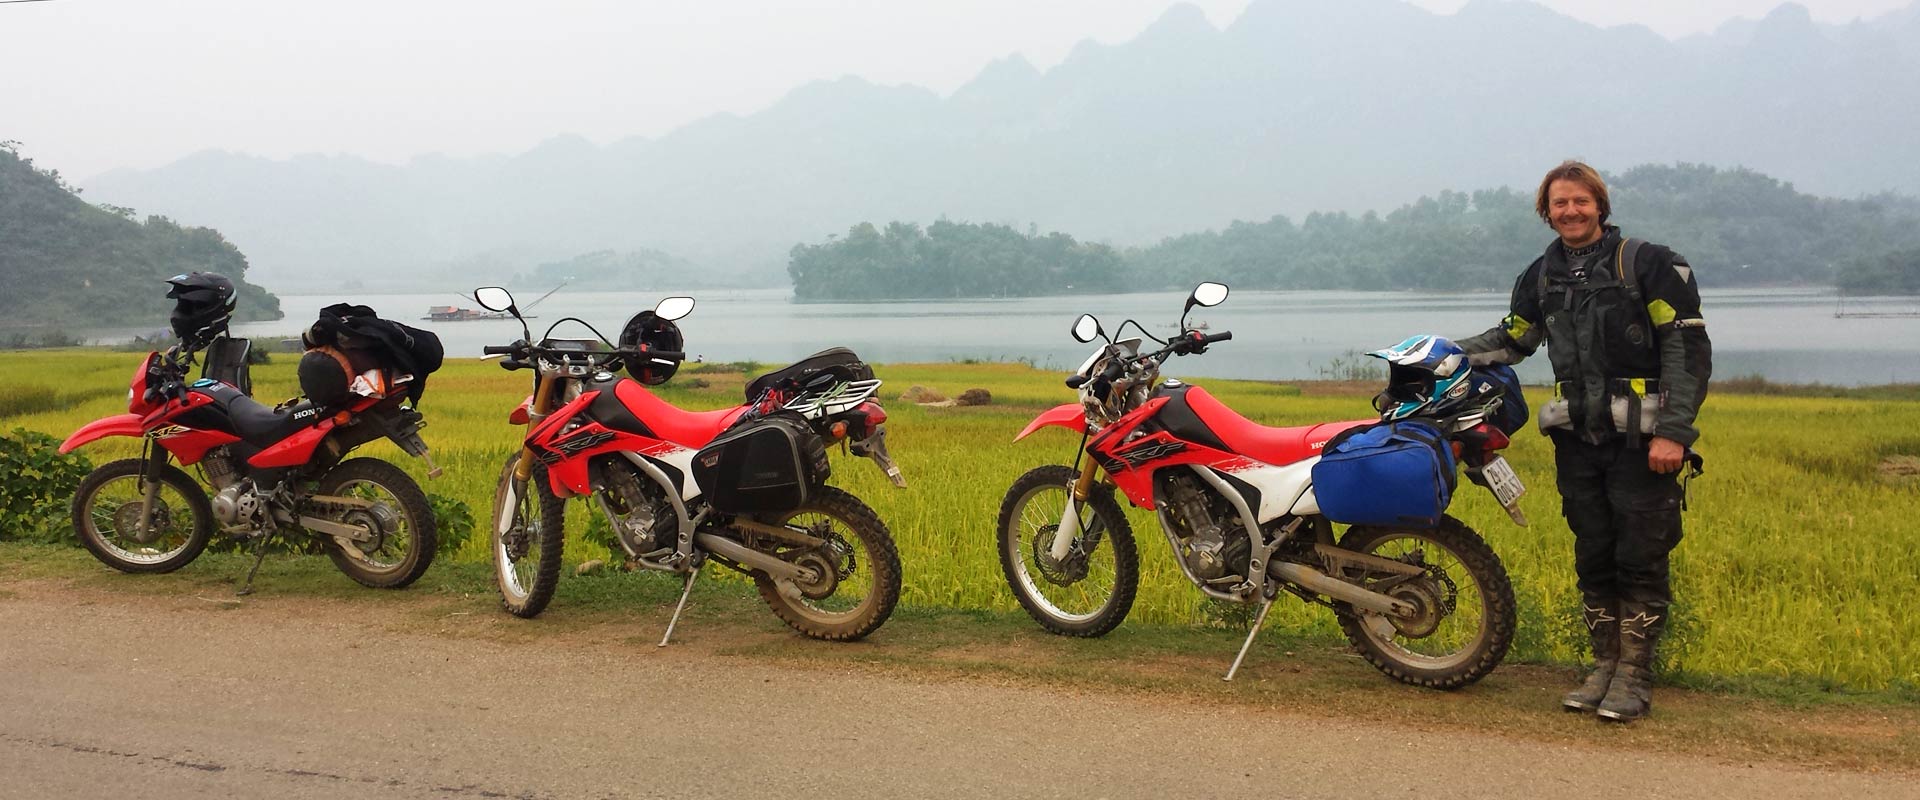 Myanmar motorcycle rental